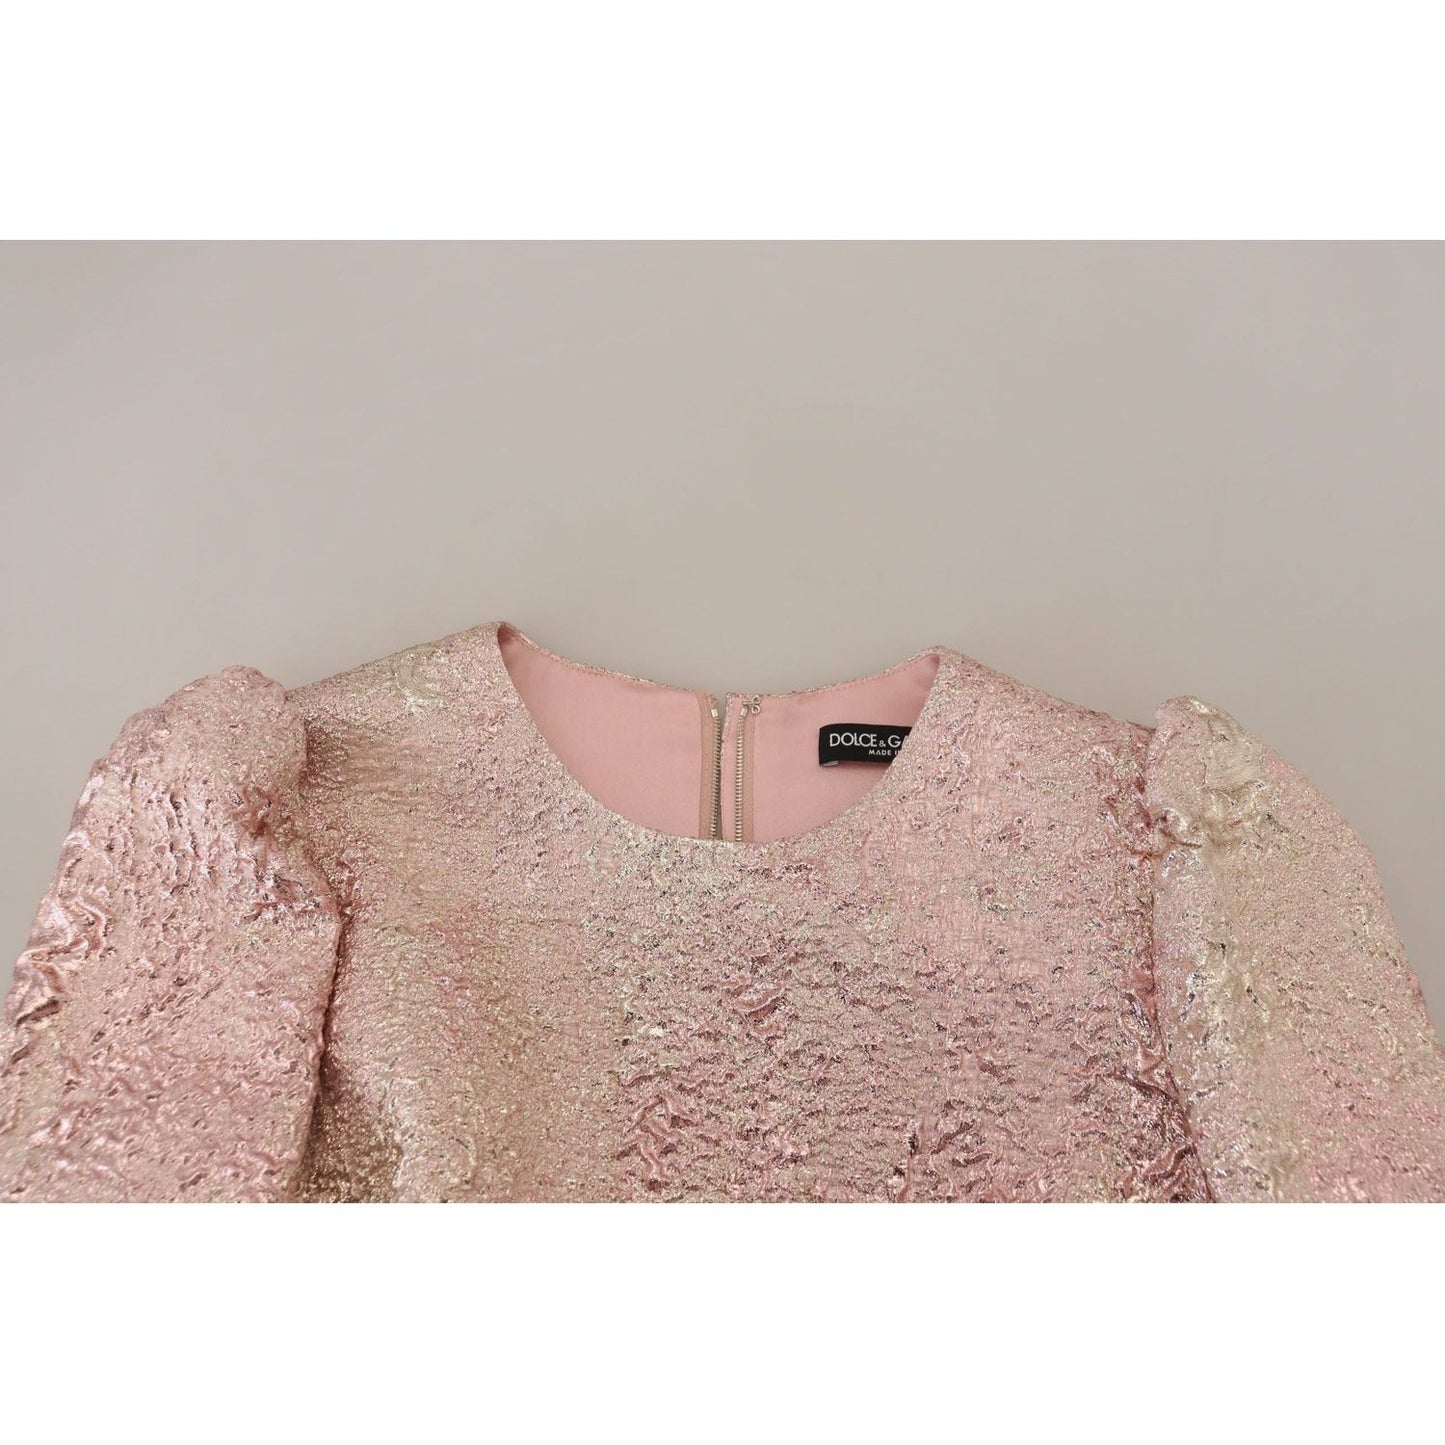 Dolce & Gabbana Elegant Pink Jacquard Midi Sheath Dress WOMAN DRESSES pink-jaquard-3-4-sleeve-sheath-midi-dress